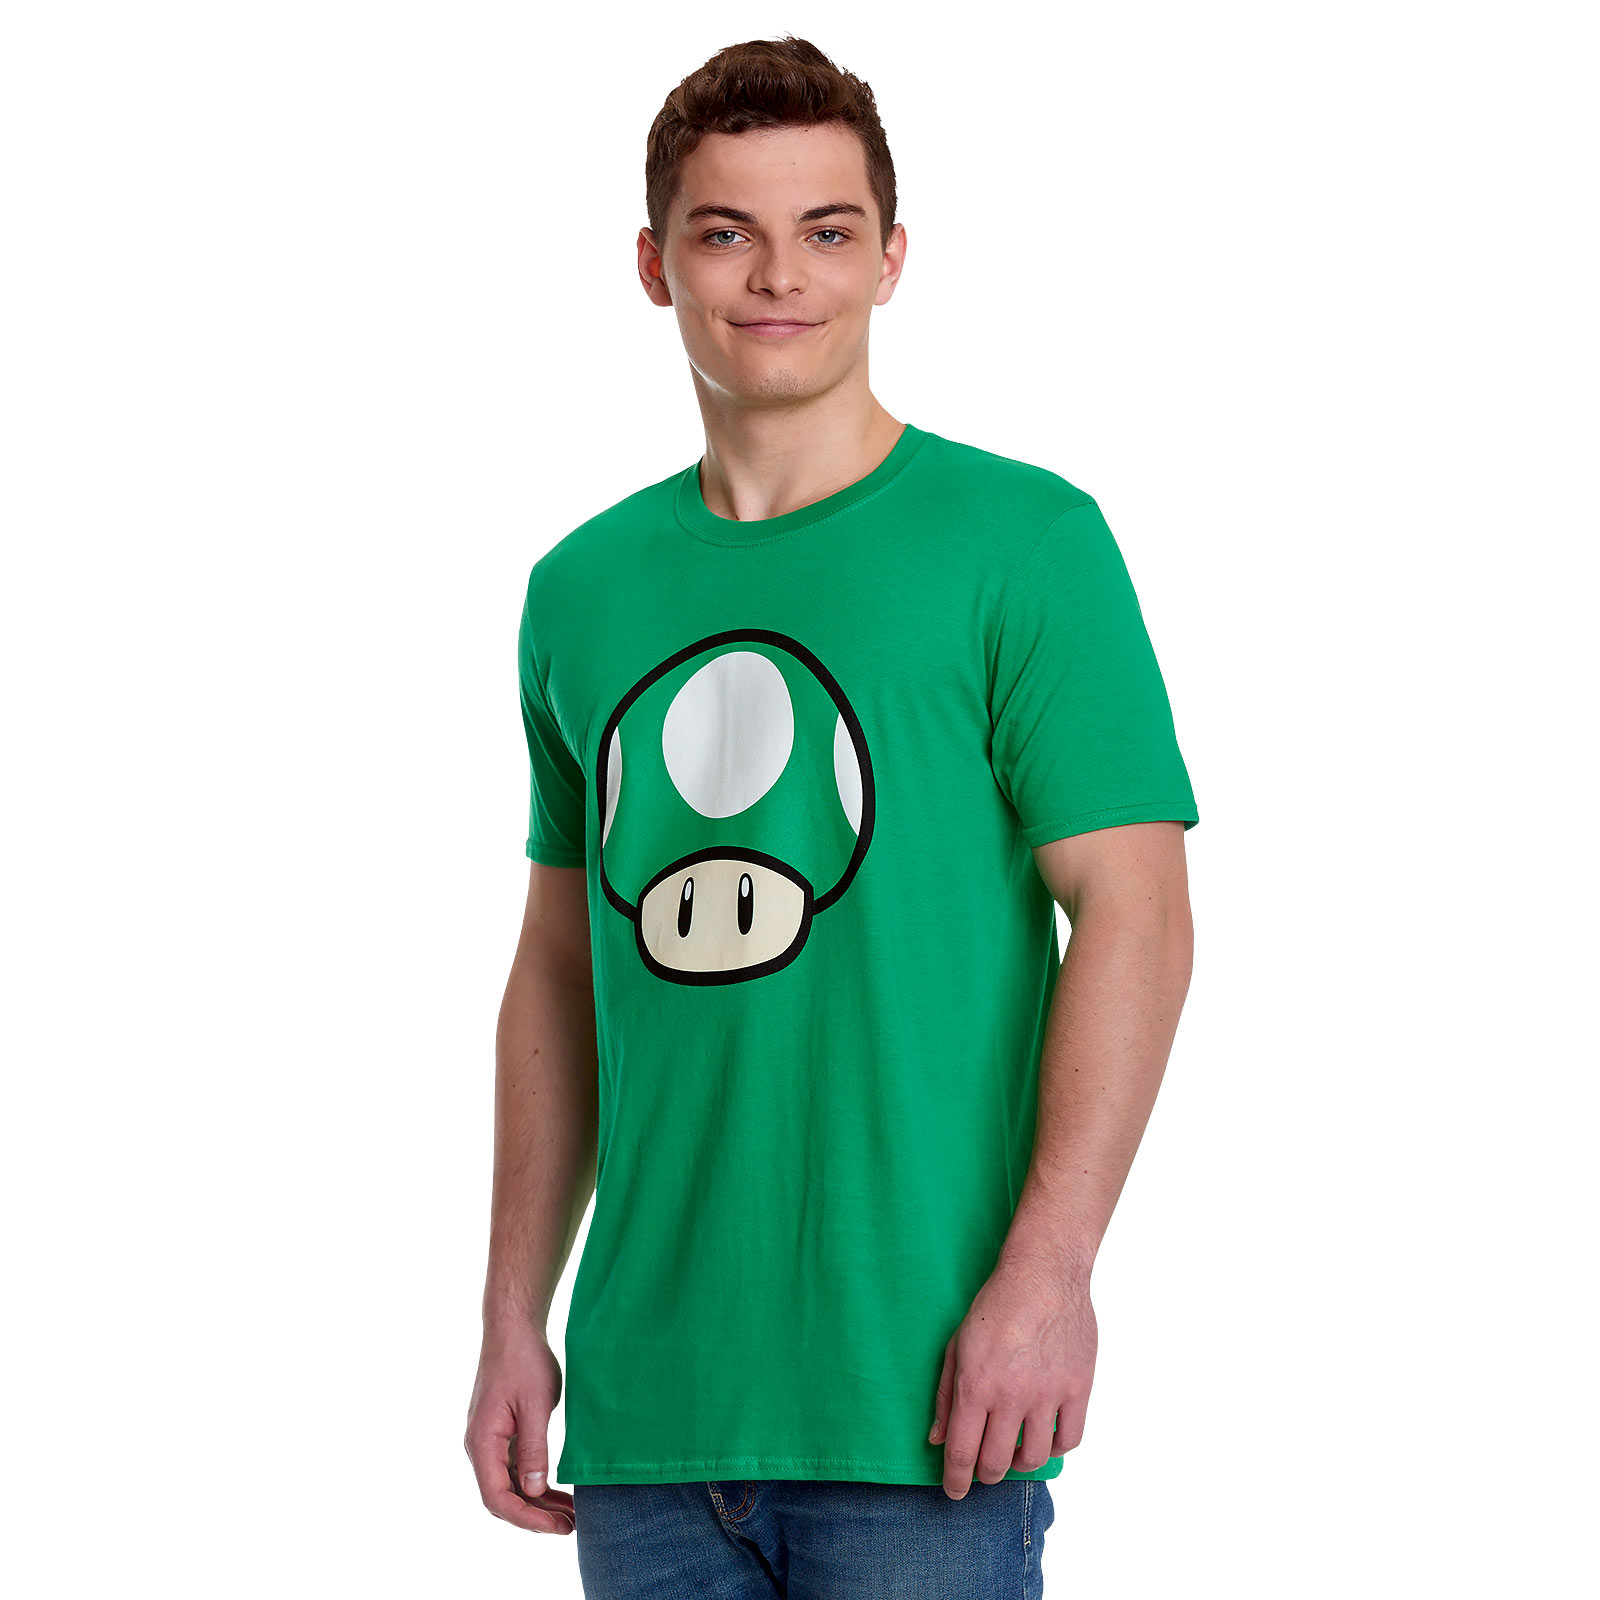 Super Mario - 1 UP Mushroom T-Shirt Green